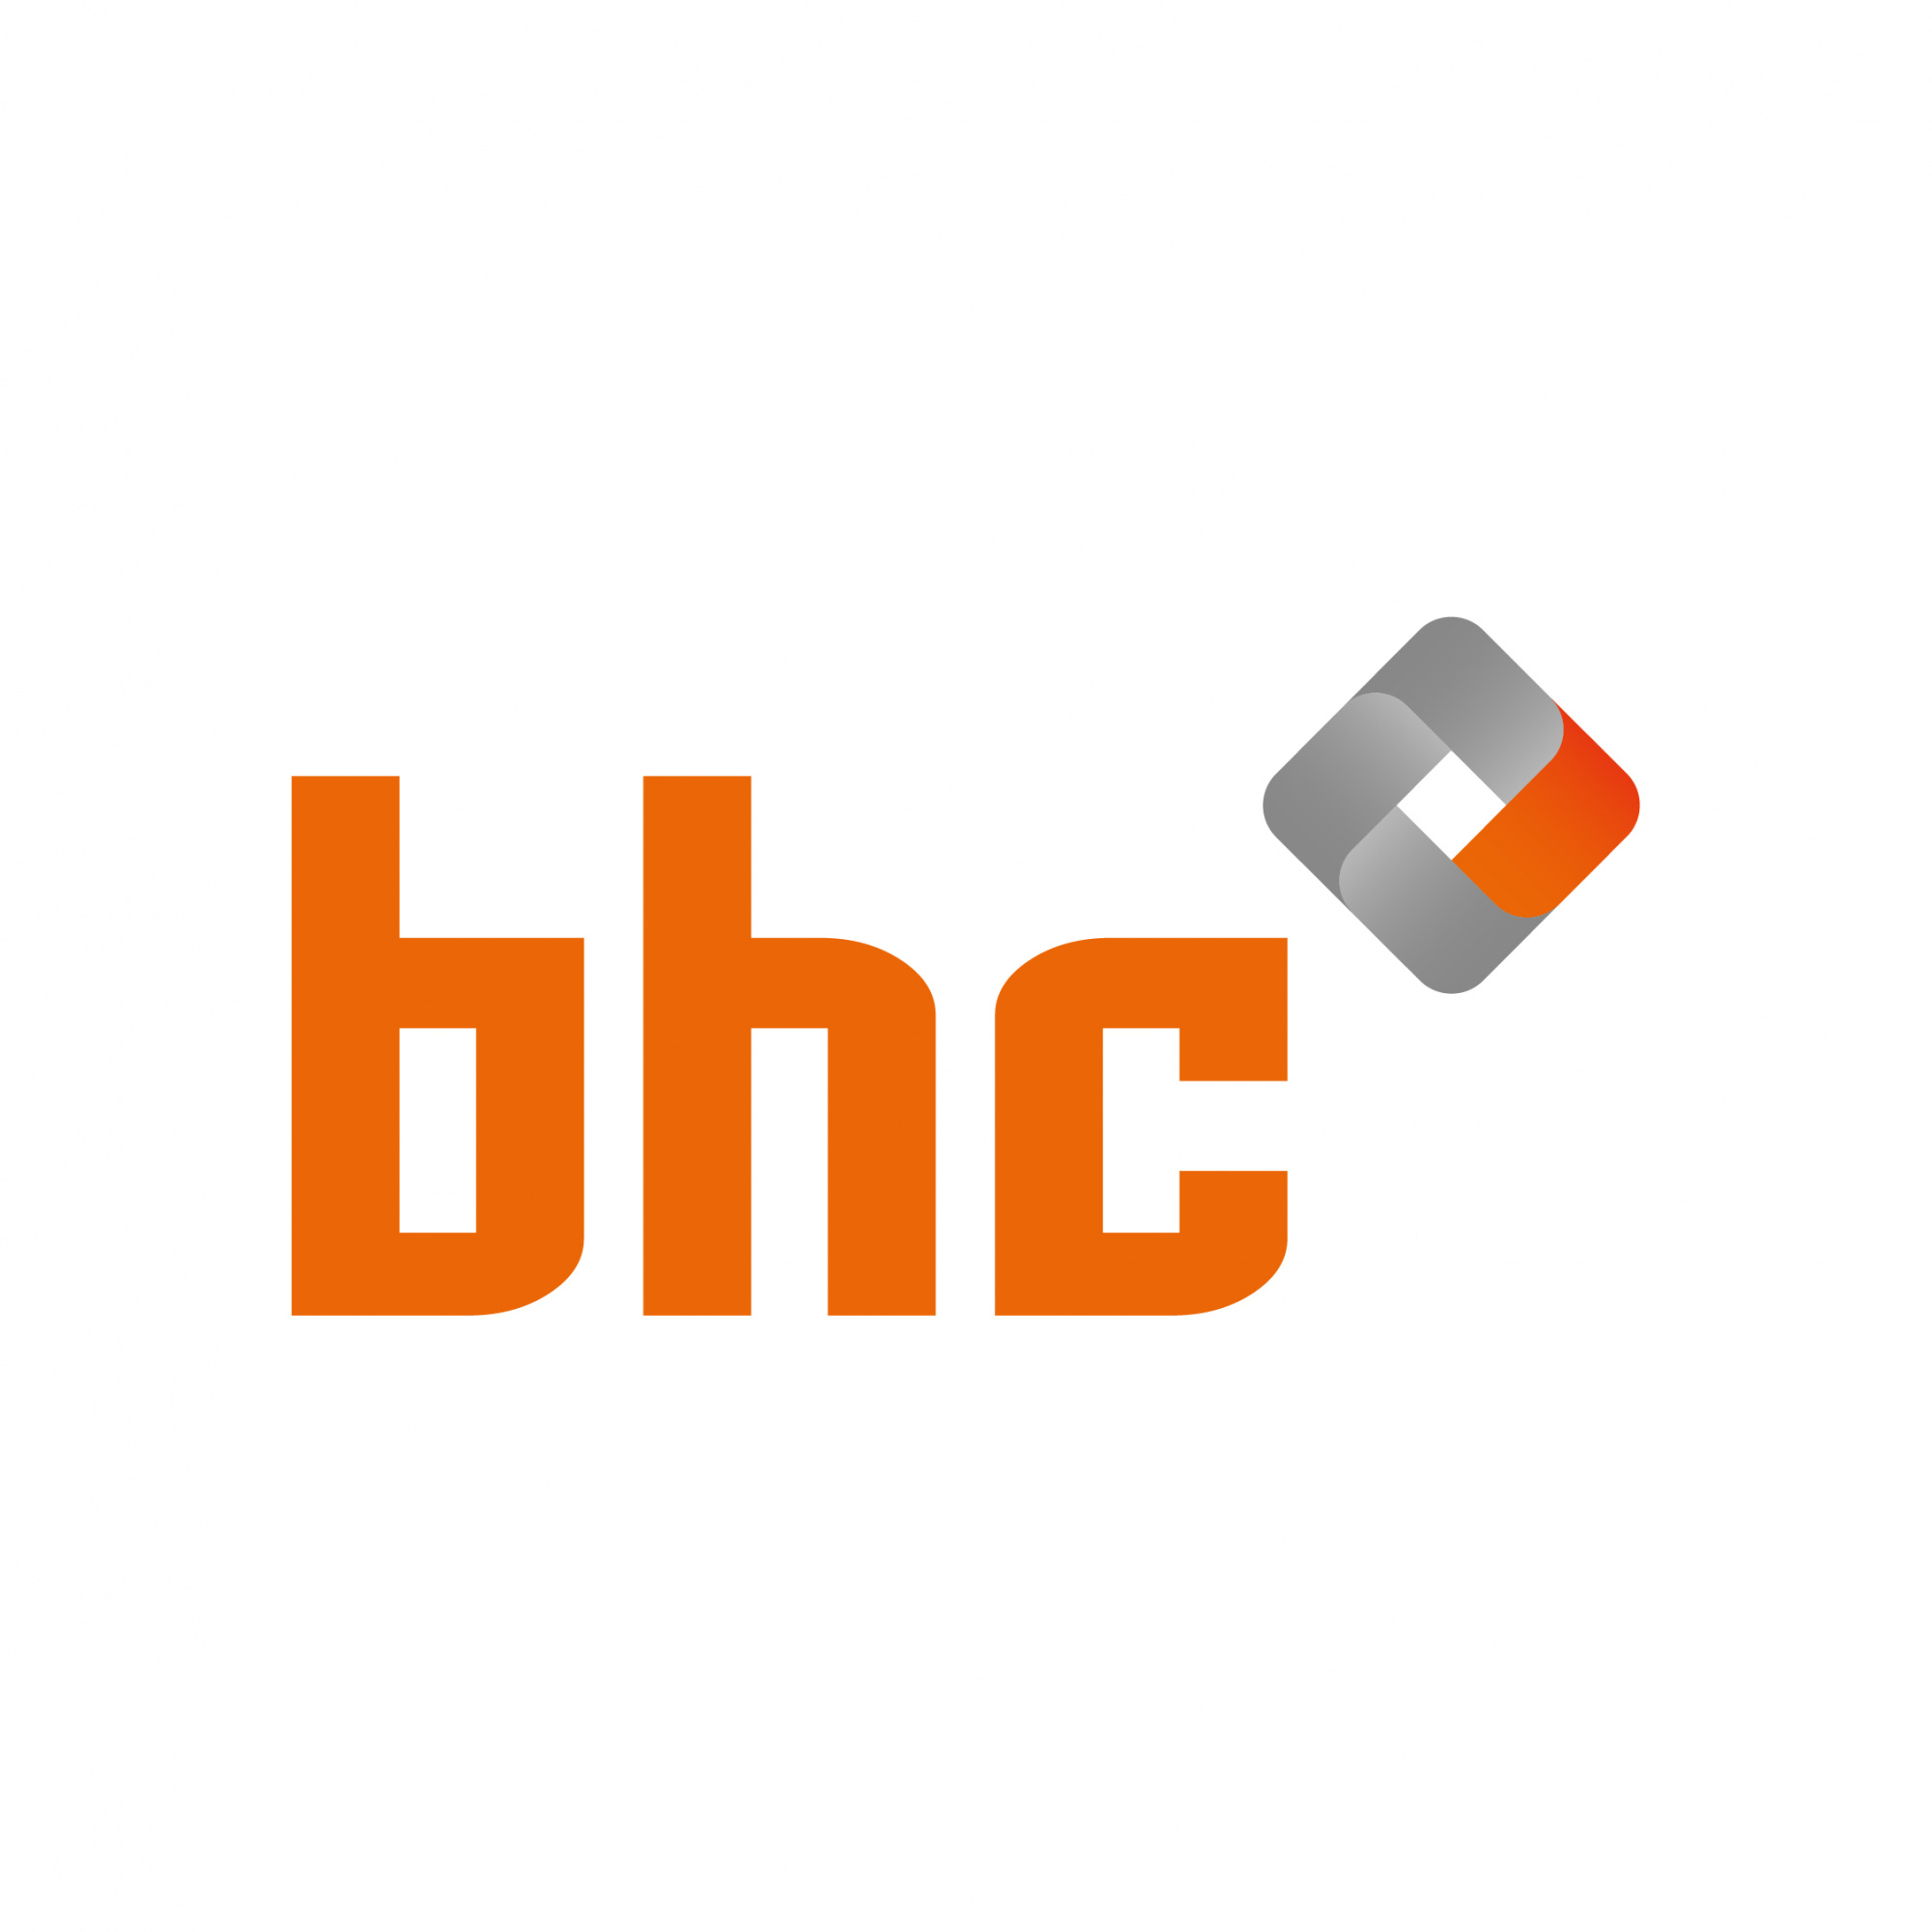 Premium Vector | Letter logo design 'bhc'